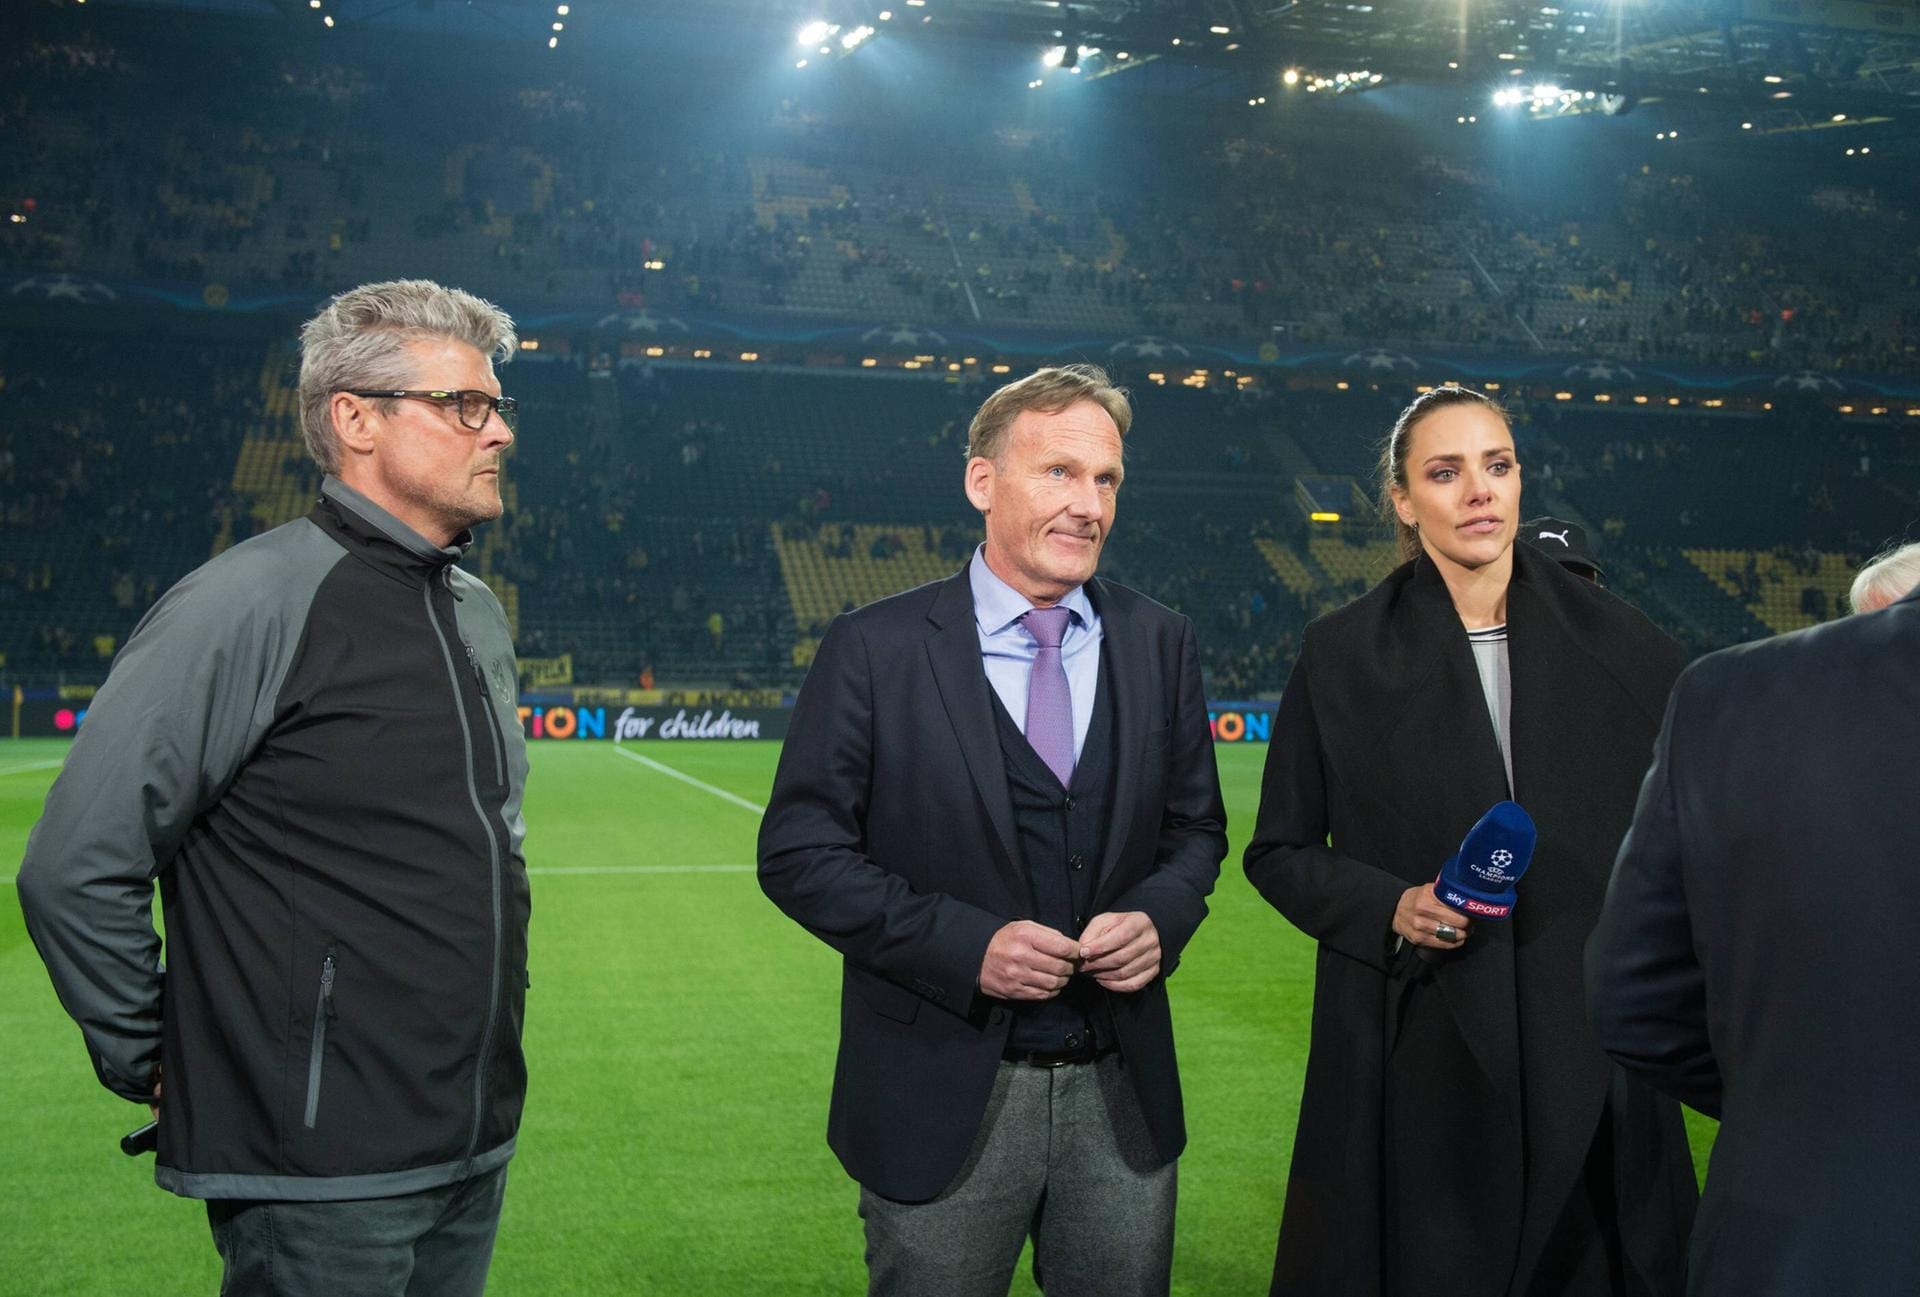 BVB-Stadionsprecher Norbert Dickel (l) und Hans-Joachim Watzke (BVB-Geschaeftsfuehrer) stehen am Spielfeldrand bei einem Fernsehinterview. Sie erklären auch die Spielabsage im Stadion.